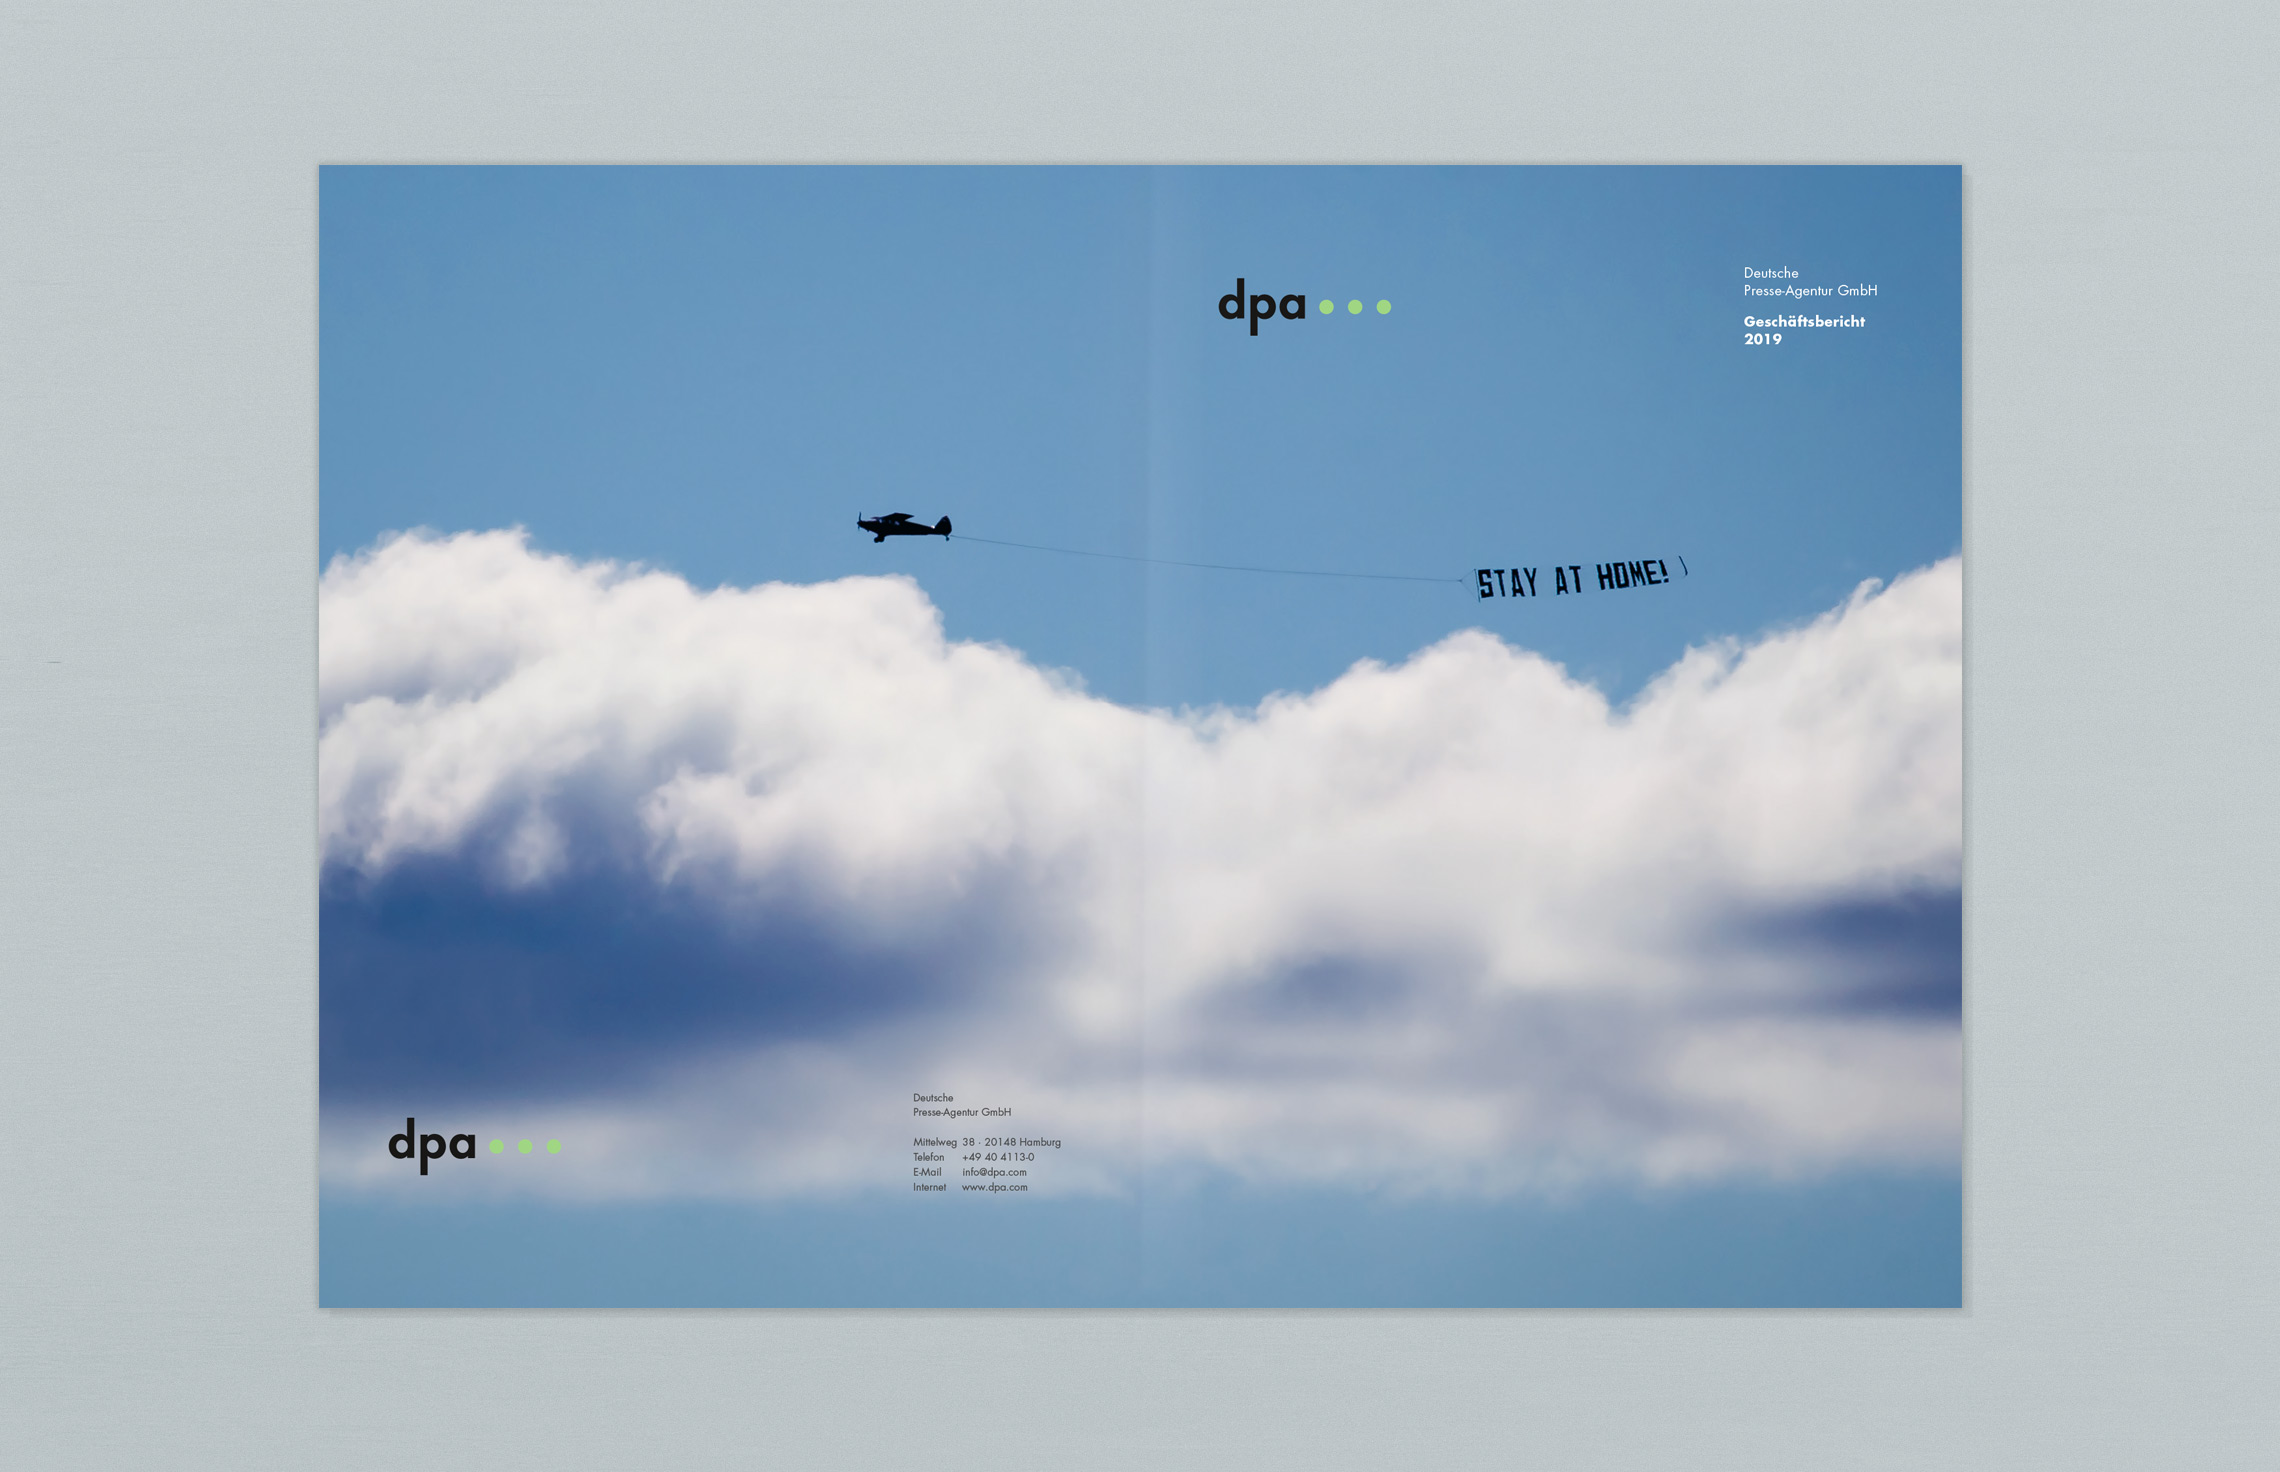 Annual Report Design, Geschäftsbericht 2019 der dpa Deutsche Presse-Agentur, Hamburg; Titel, Umschlag aufgeklappt; Fotografie